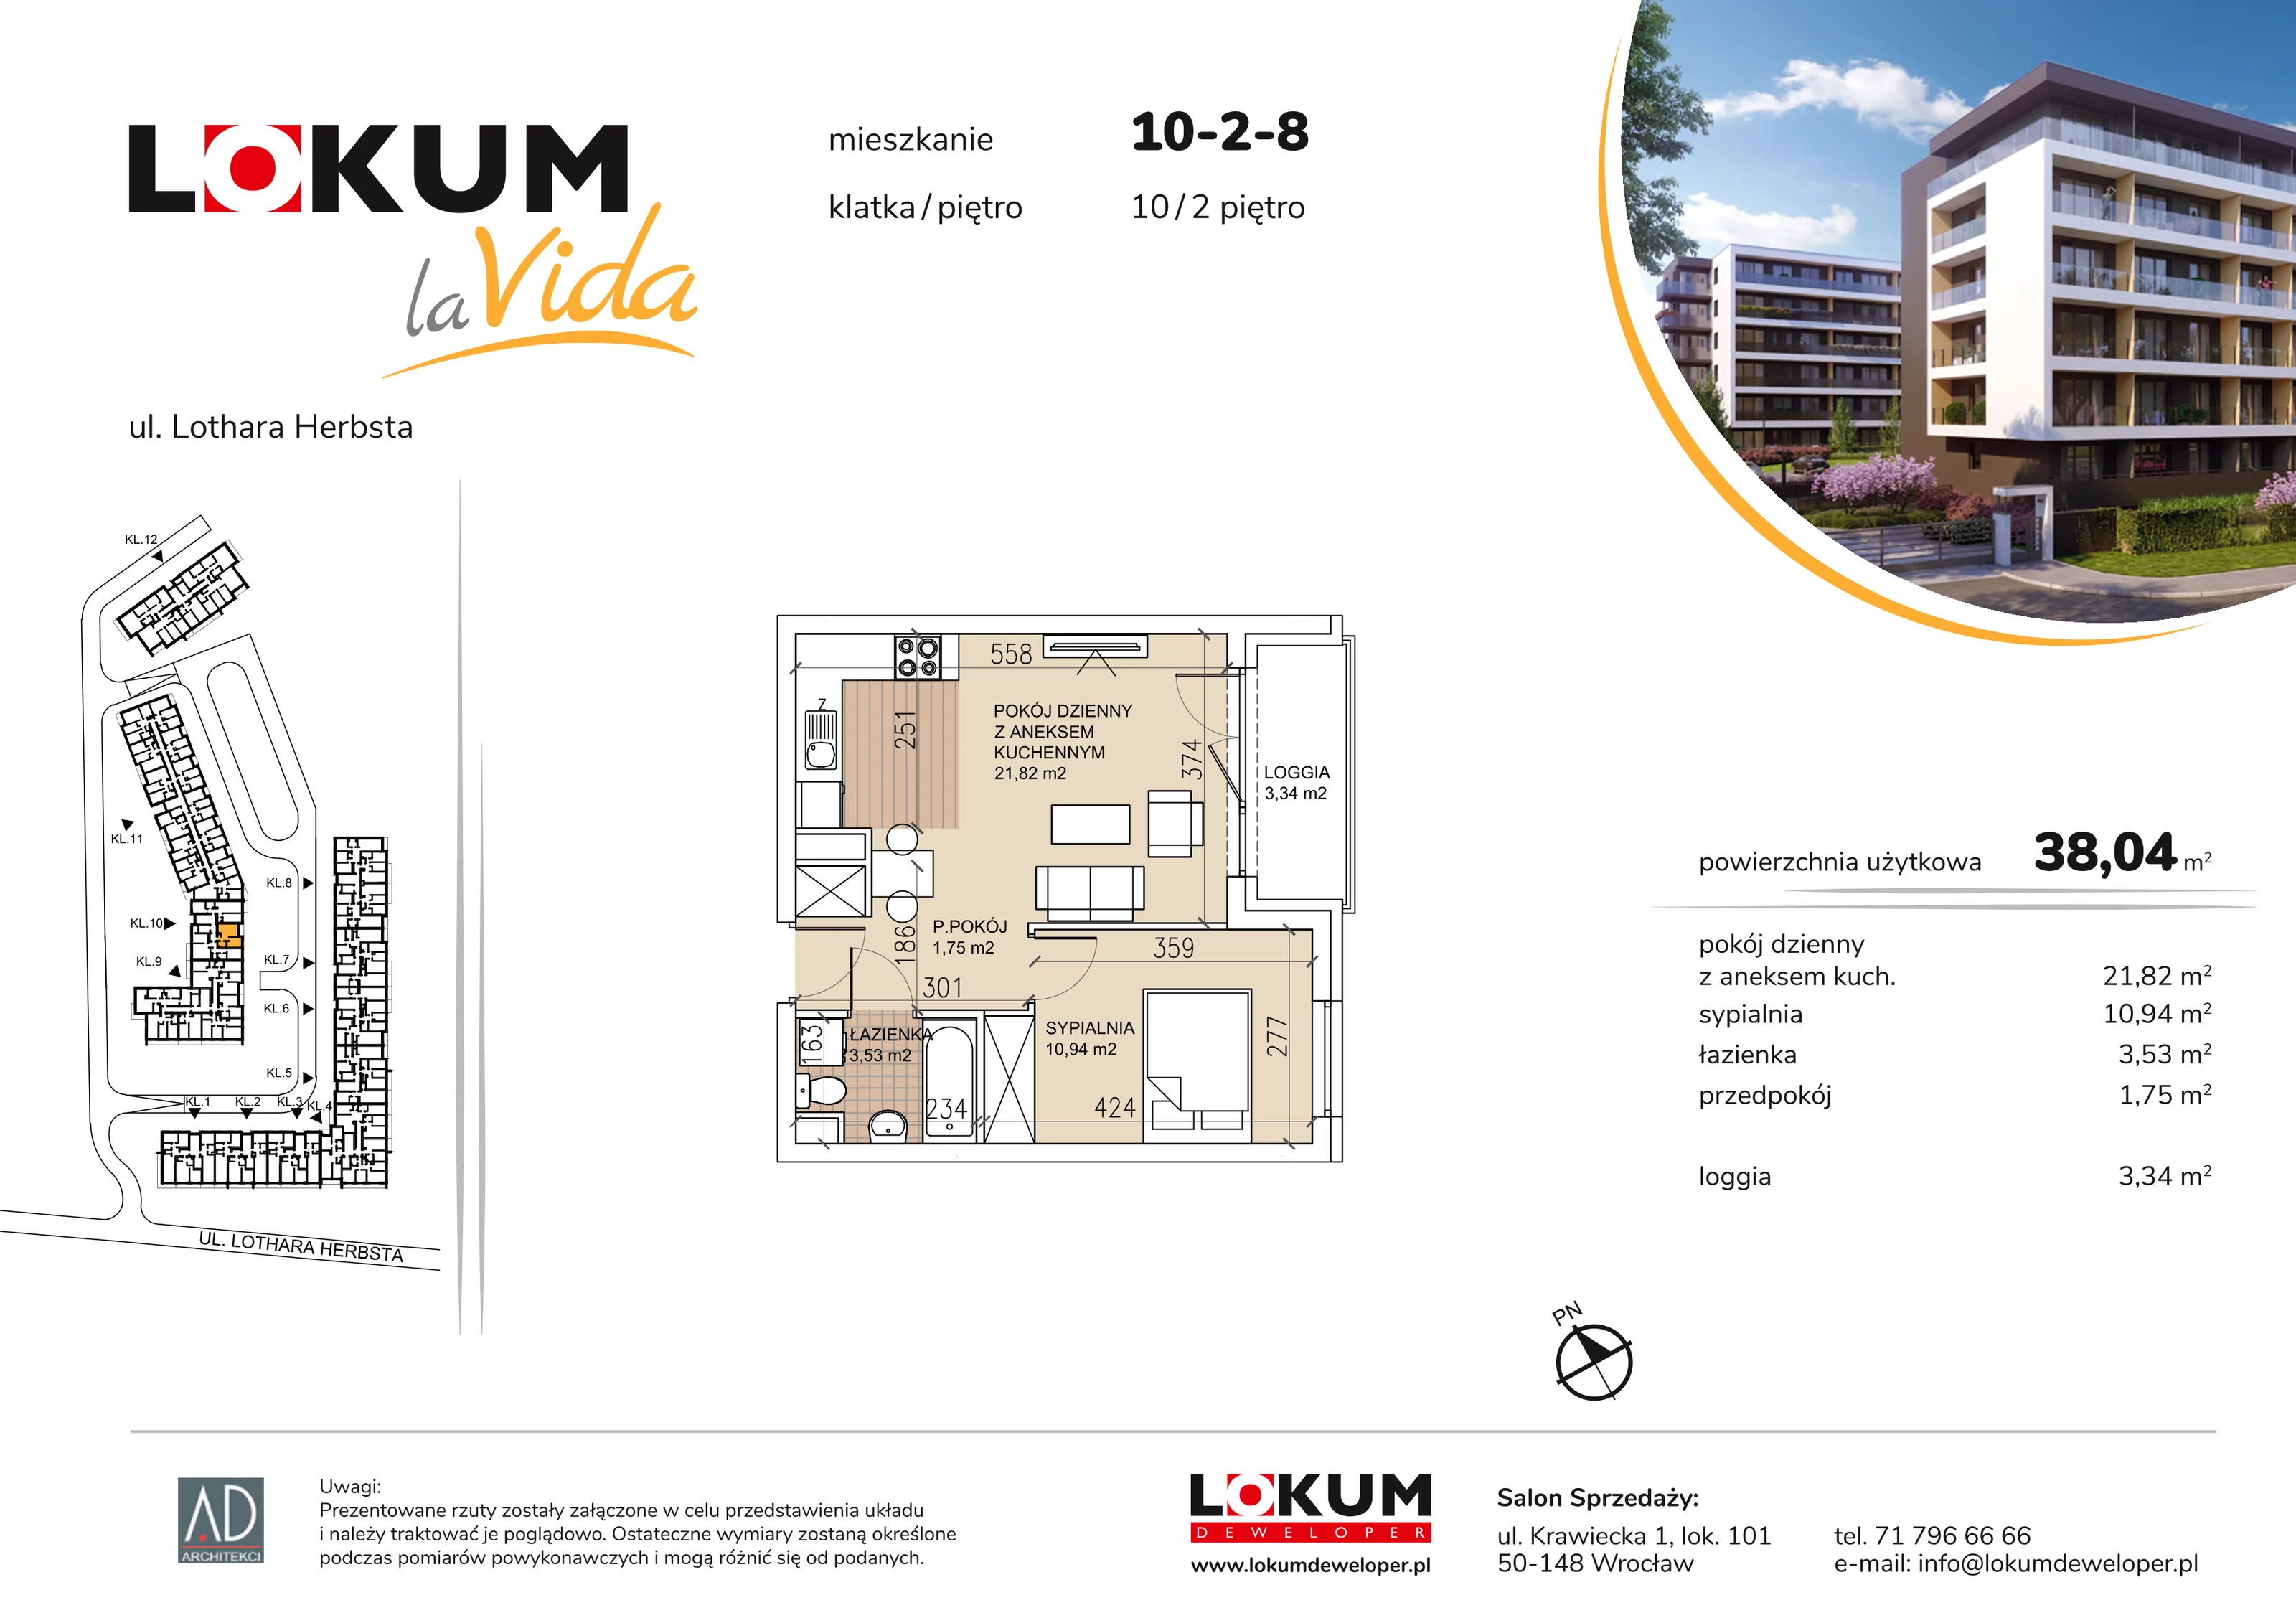 Mieszkanie 38,04 m², piętro 2, oferta nr 10-2-8, Lokum la Vida, Wrocław, Sołtysowice, ul. Lothara Herbsta